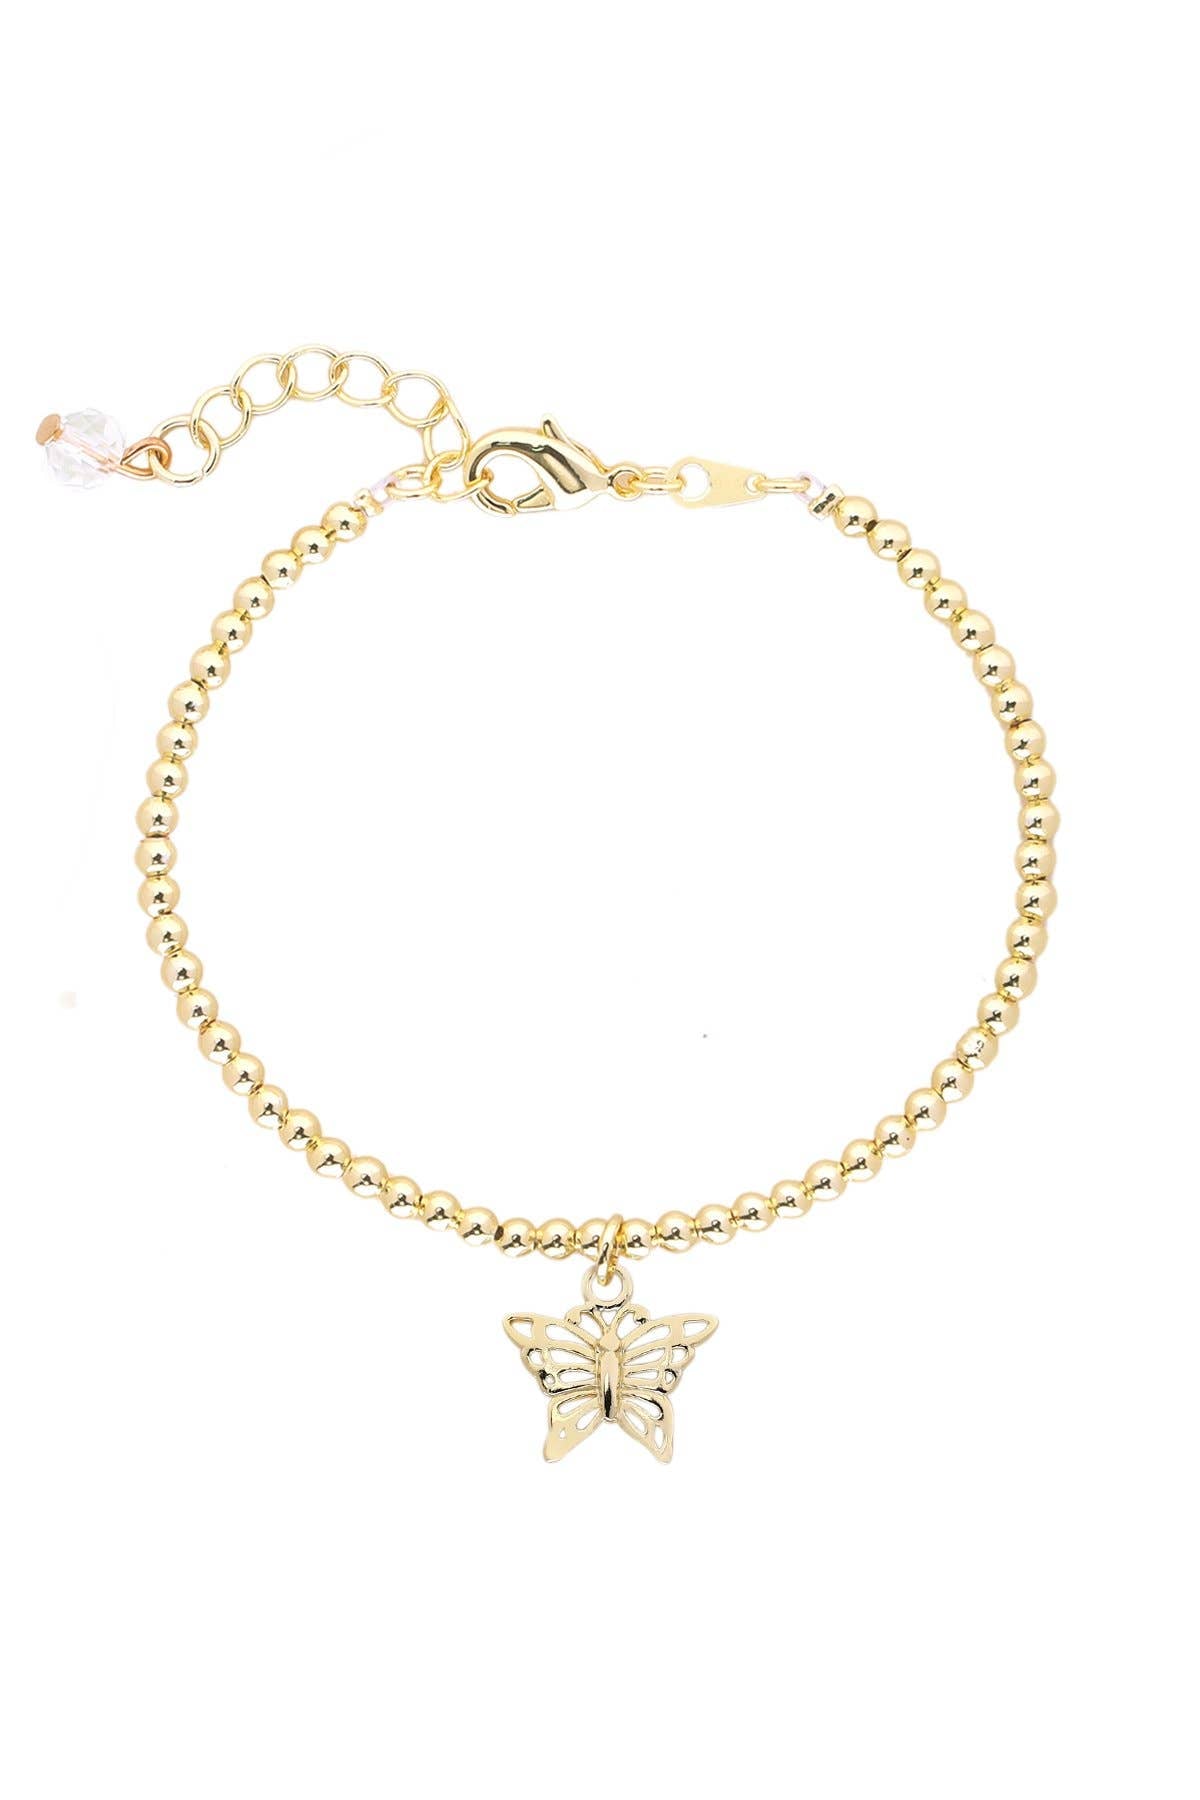 Butterfly Charm Beaded Bracelet In 14K Gold - GF